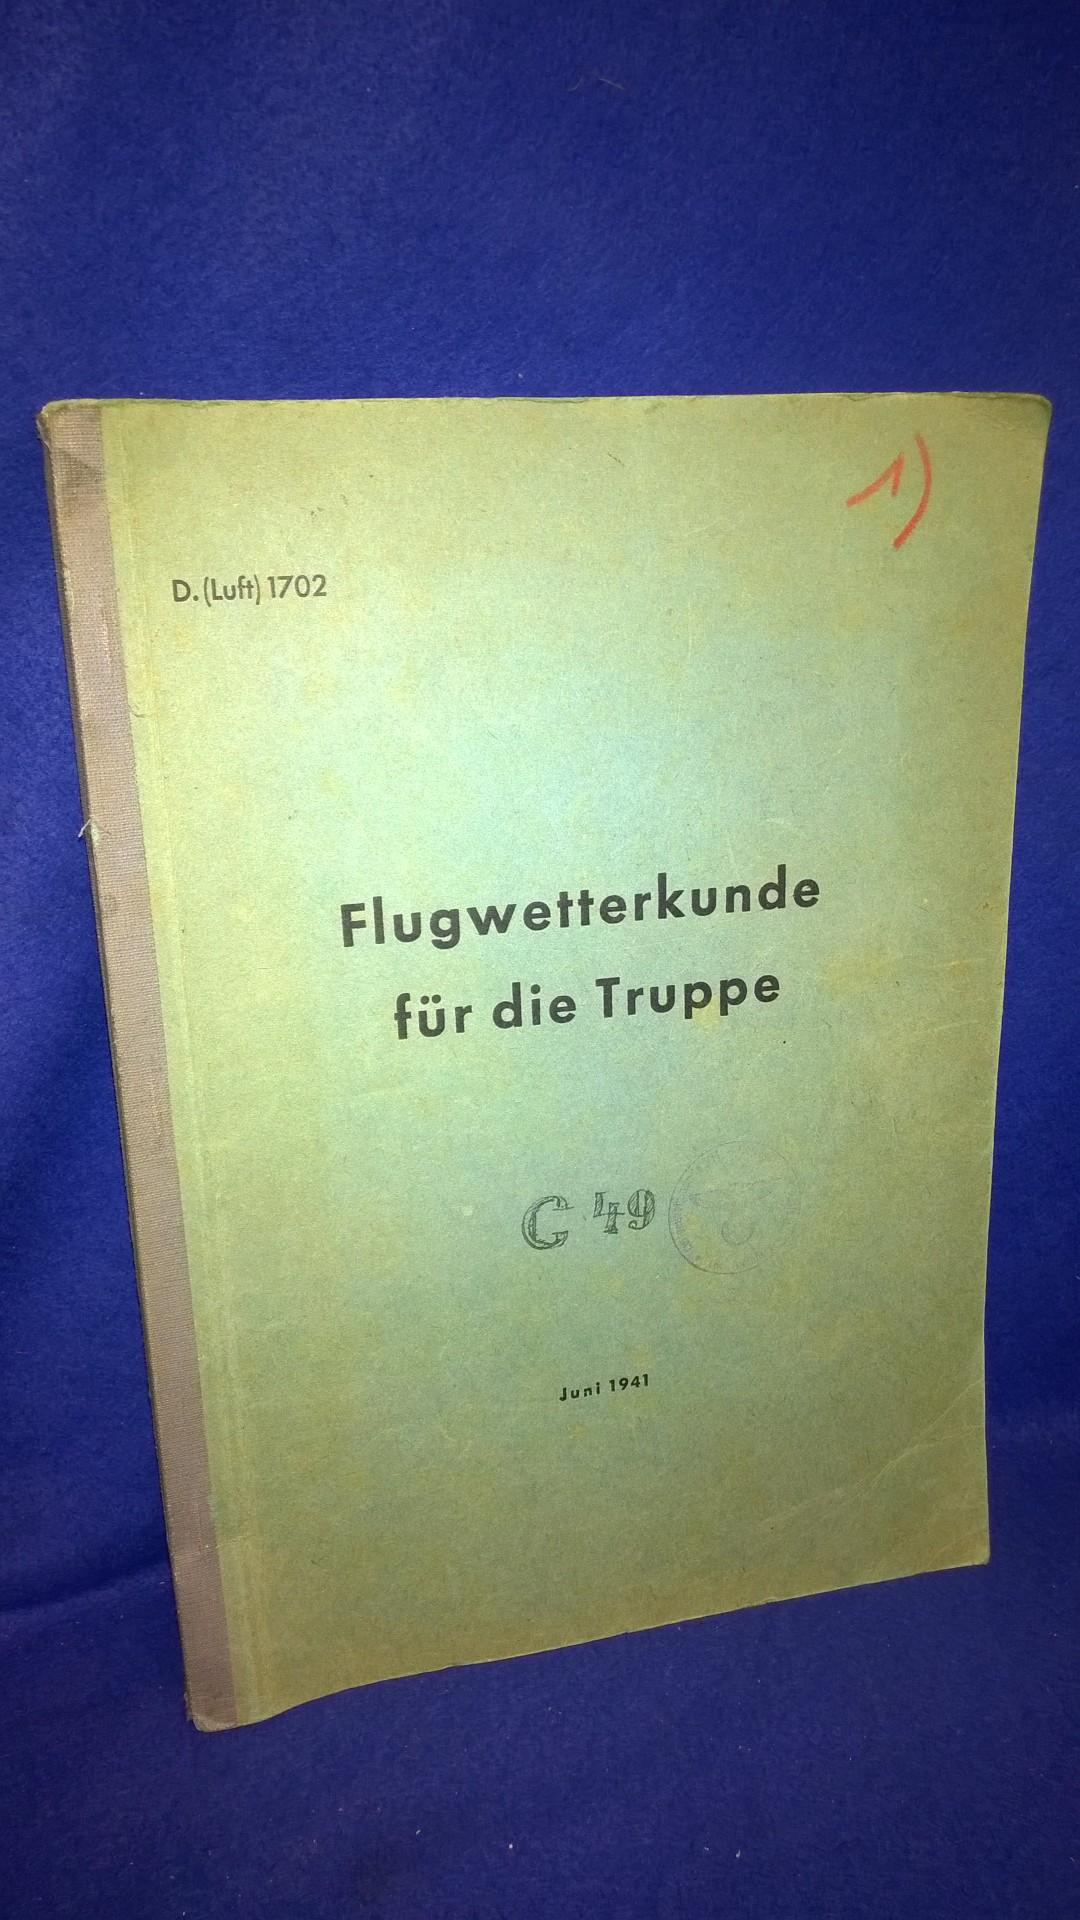 D.(Luft) 1702. Flugwetterkunde für die Truppe, Juni 1941. Seltene Orginalvorschrift.